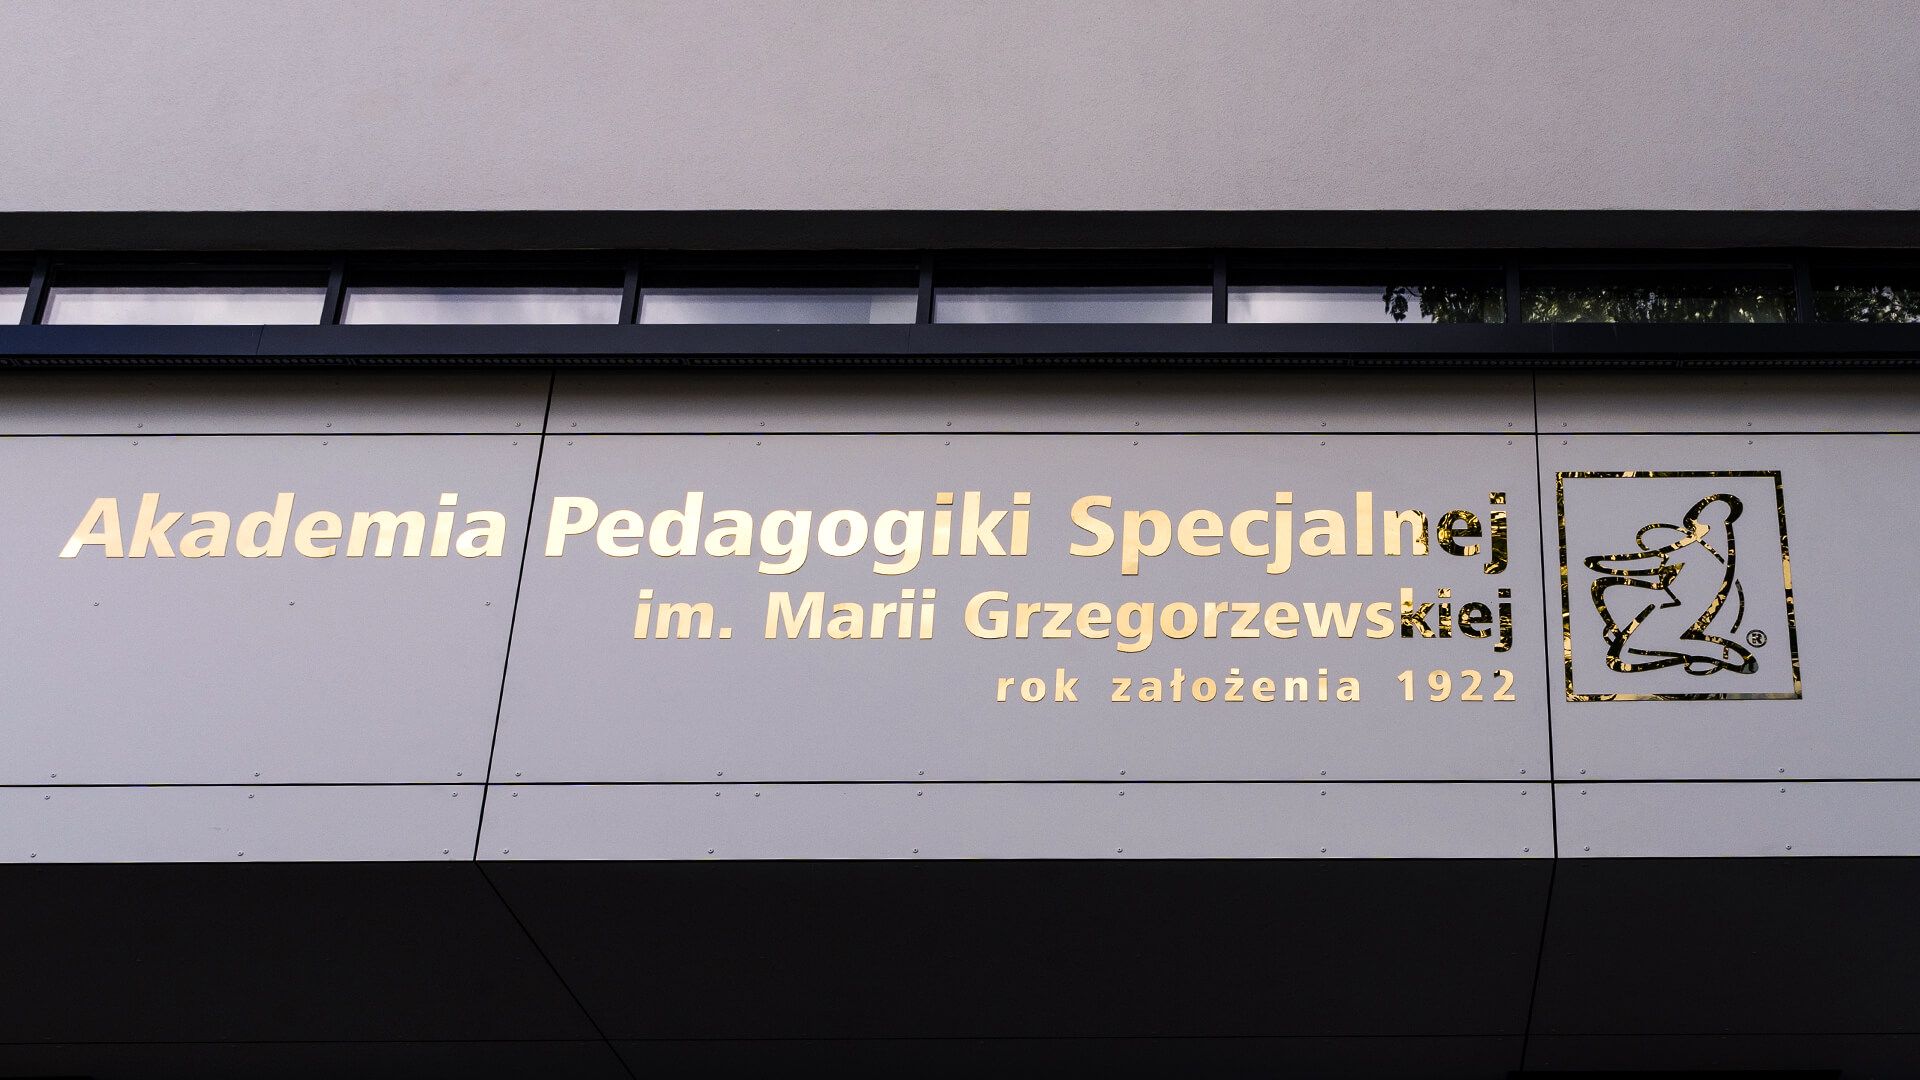 Academie voor Speciaal Onderwijs - Metalen letters - Gouden roestvrij stalen letters boven de ingang.